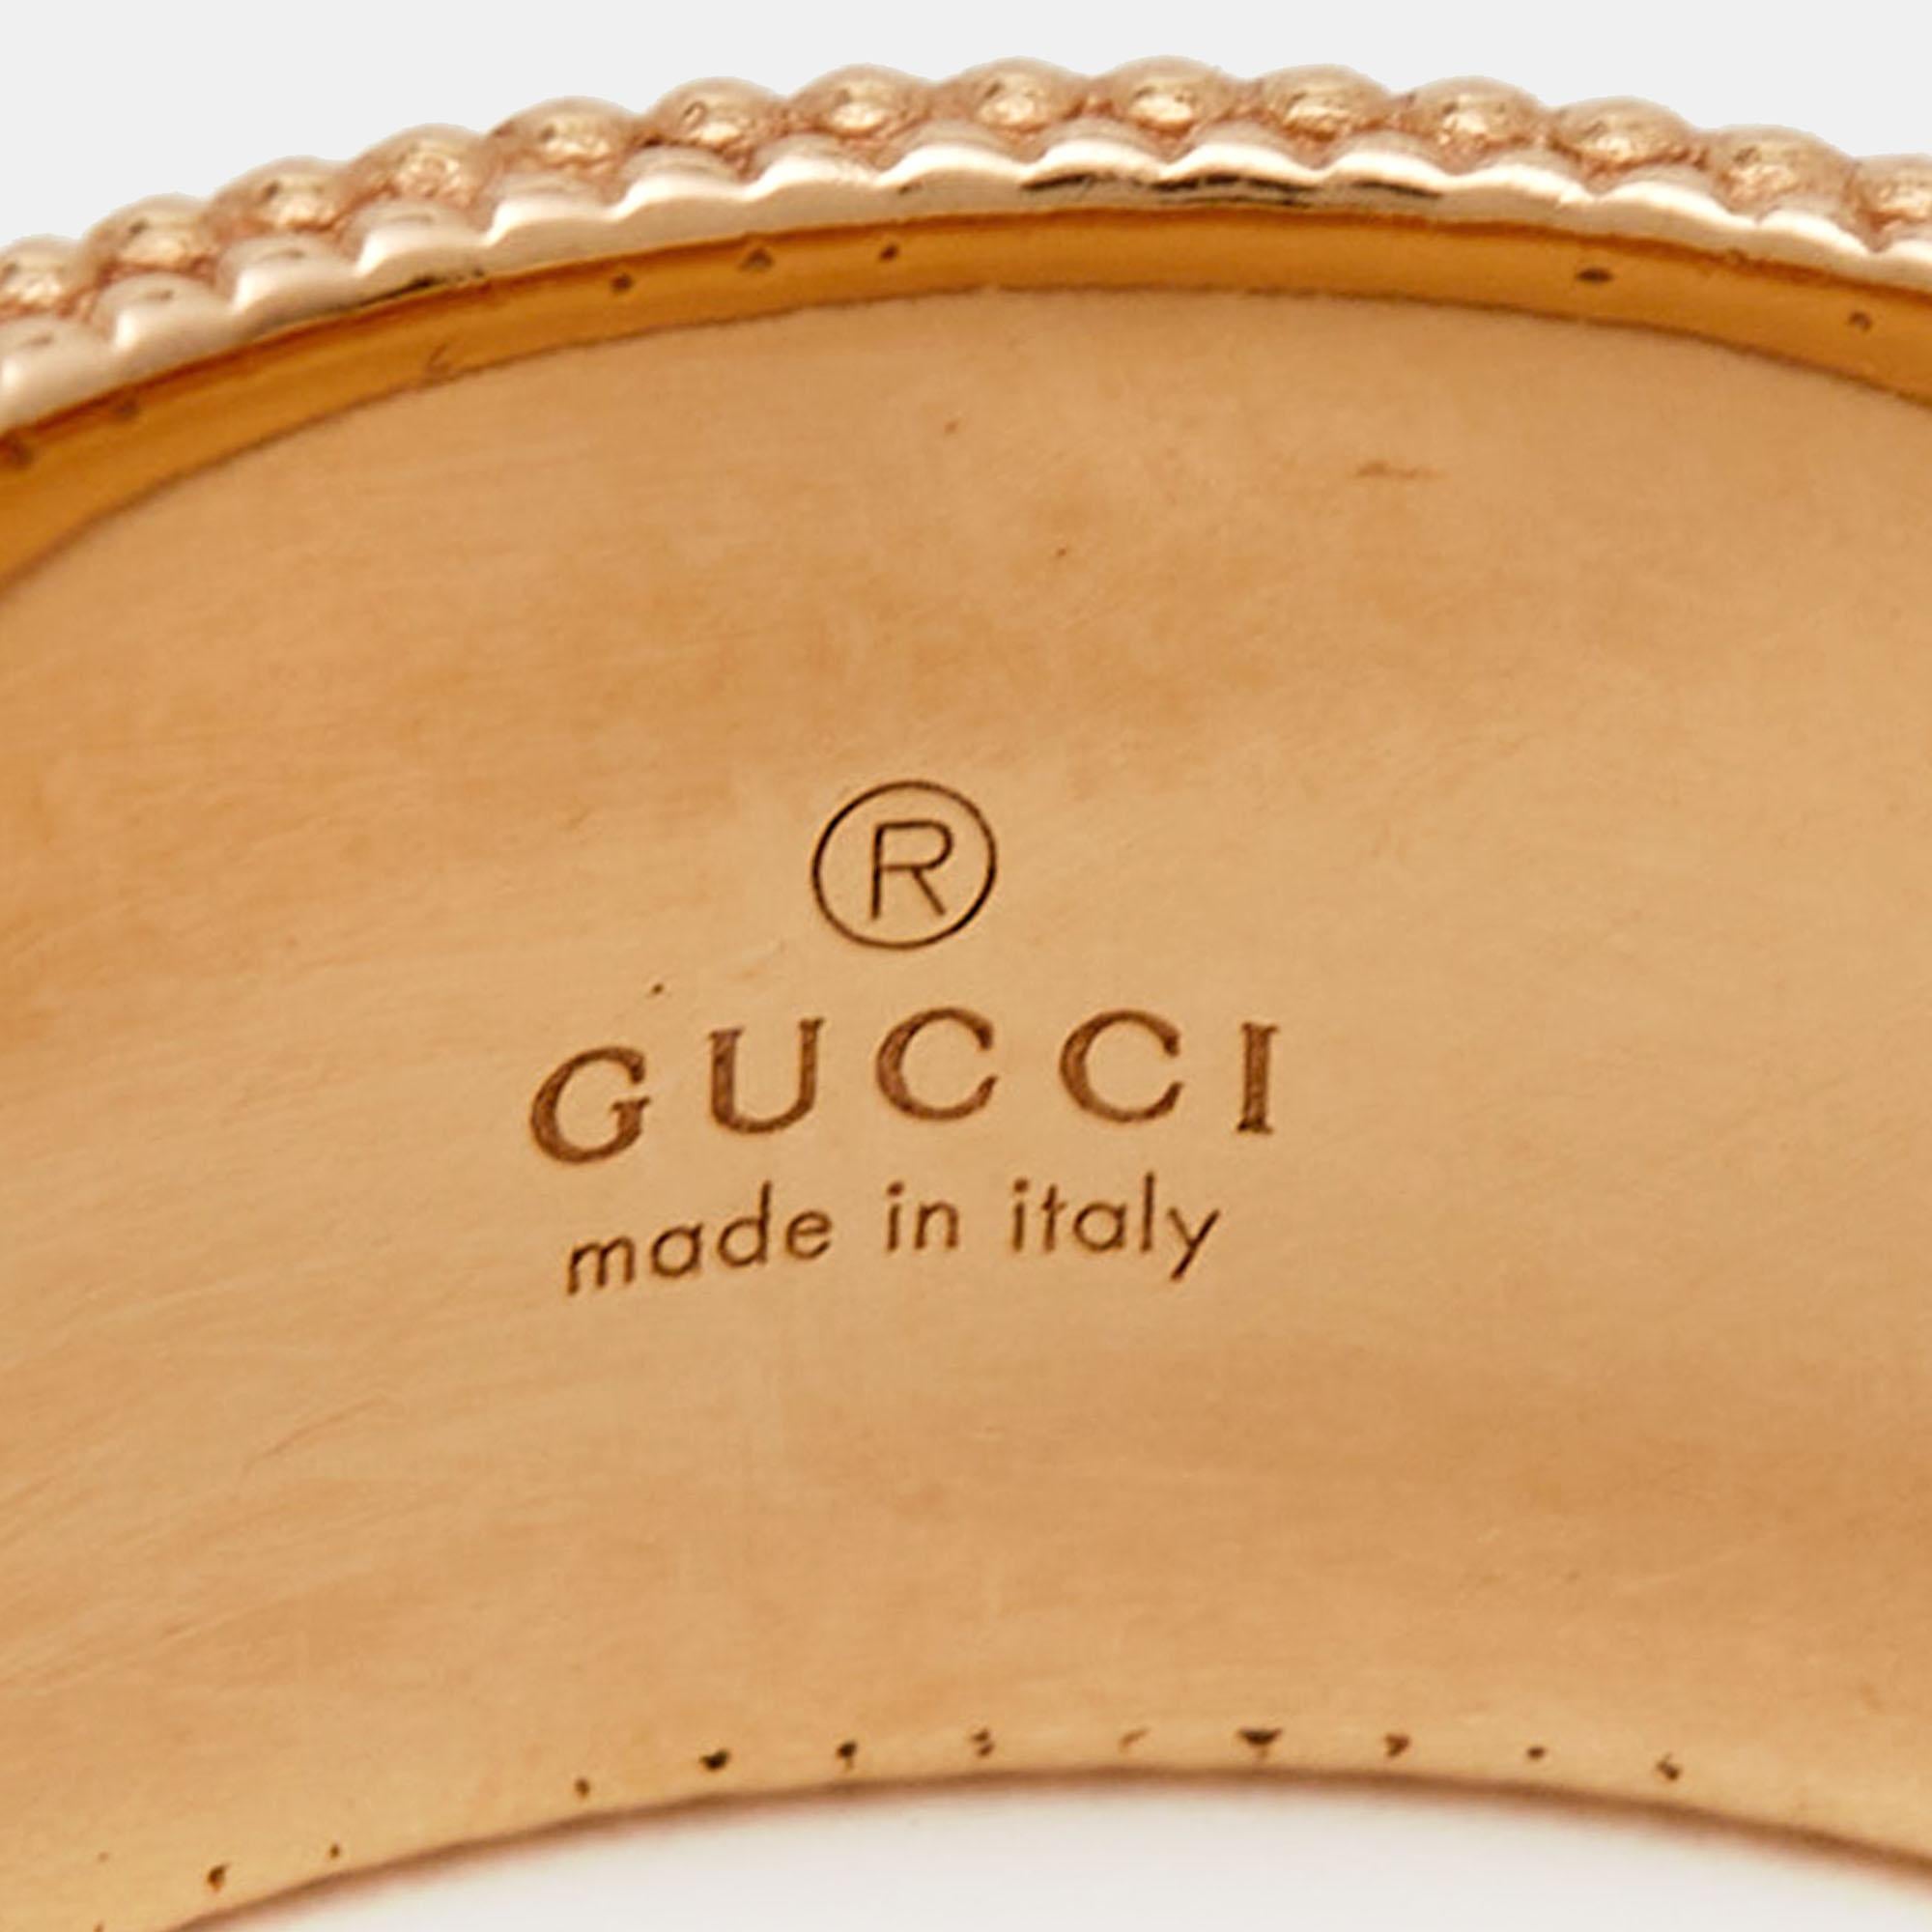 Lassen Sie sich von der zeitlosen Anziehungskraft des Gucci Armbands verzaubern. Dieses exquisite, mit viel Liebe zum Detail gefertigte Schmuckstück kombiniert luxuriöses 18-karätiges Roségold mit zarten Emailleblüten und GG-Logos und schafft so